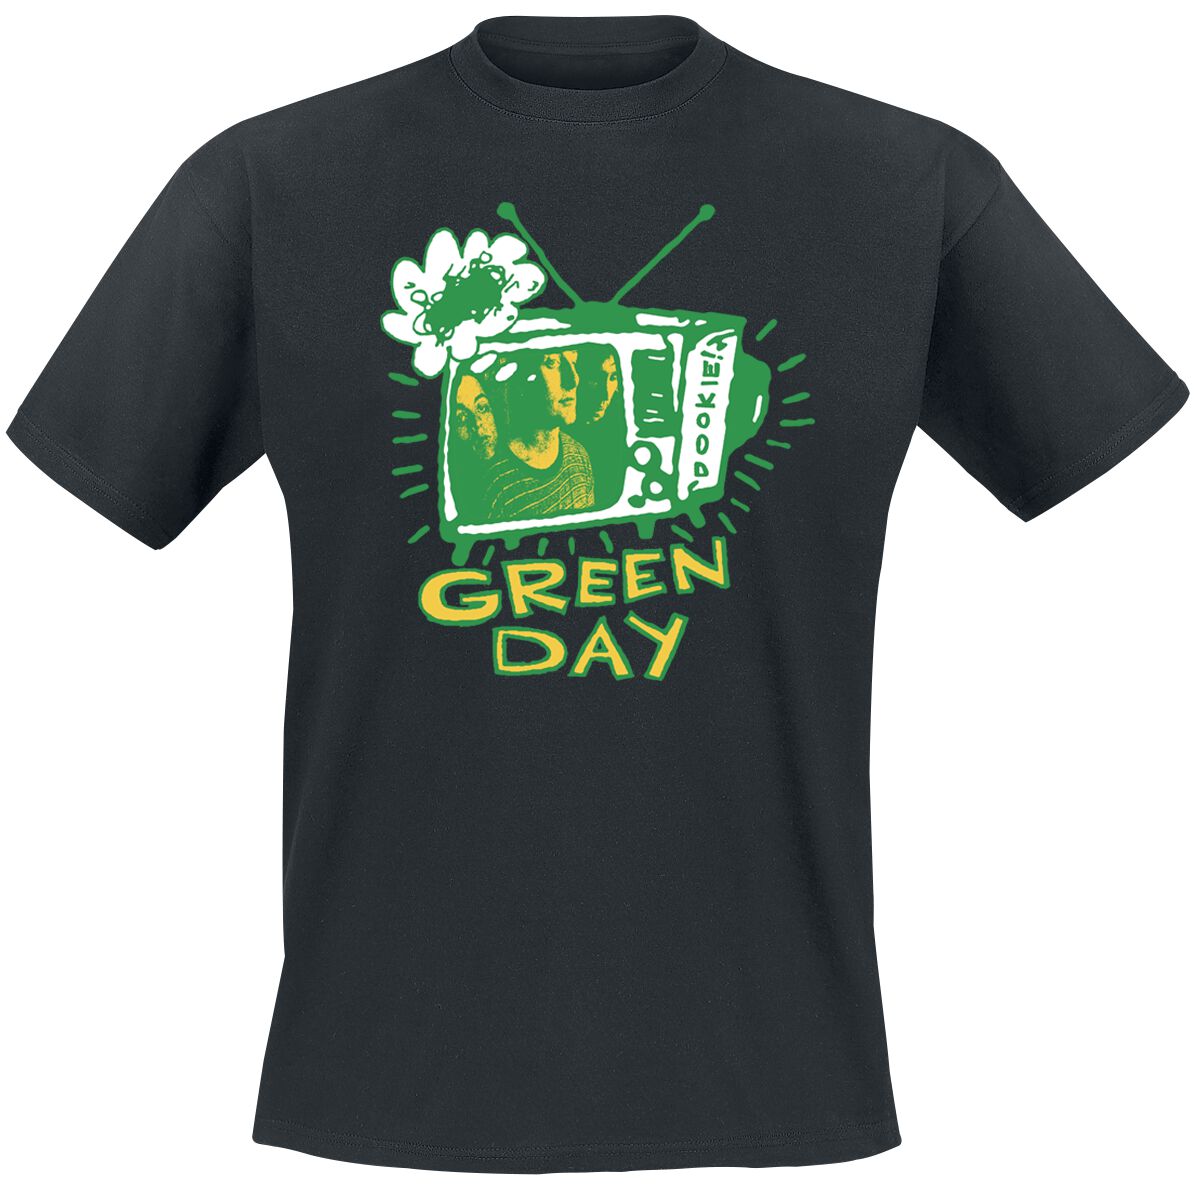 Green Day T-Shirt - Longview TV - S bis XXL - für Männer - Größe S - schwarz  - Lizenziertes Merchandise!